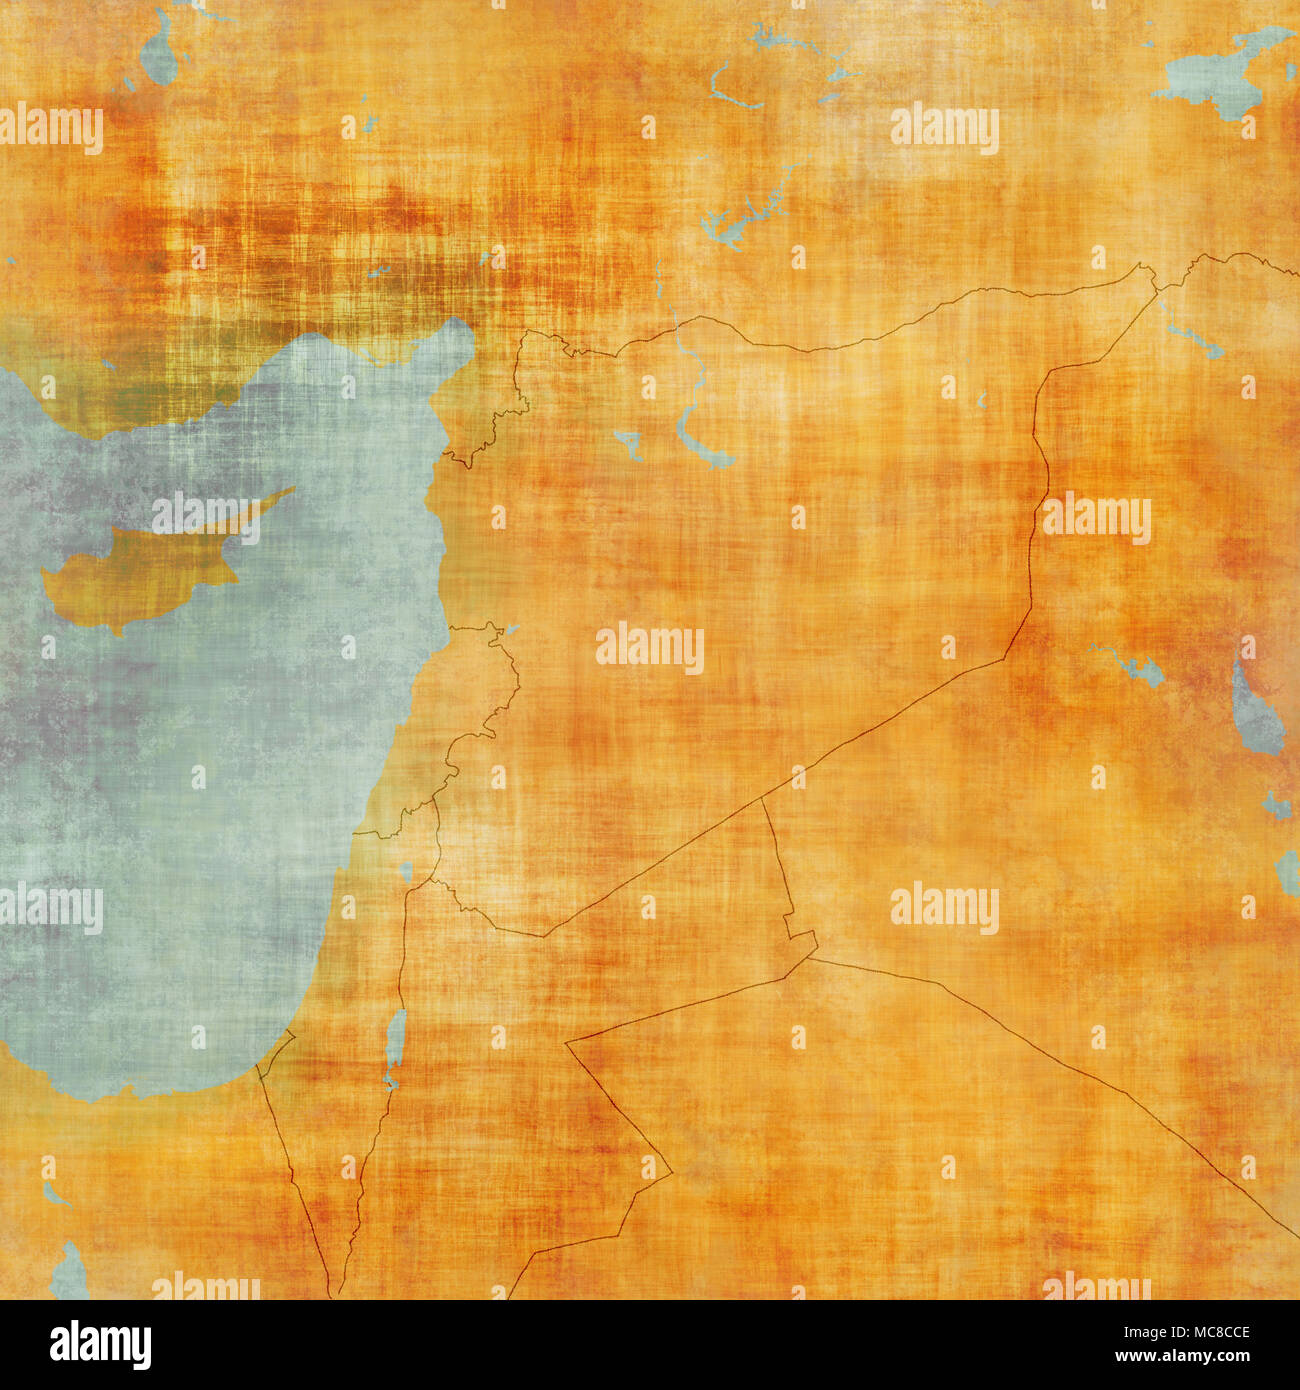 Karte von Syrien und Grenzen, physische Karte Naher Osten, Arabische Halbinsel, Reliefs und Berge und das Mittelmeer. Karte auf Pergament. Hand gezeichnet Stockfoto